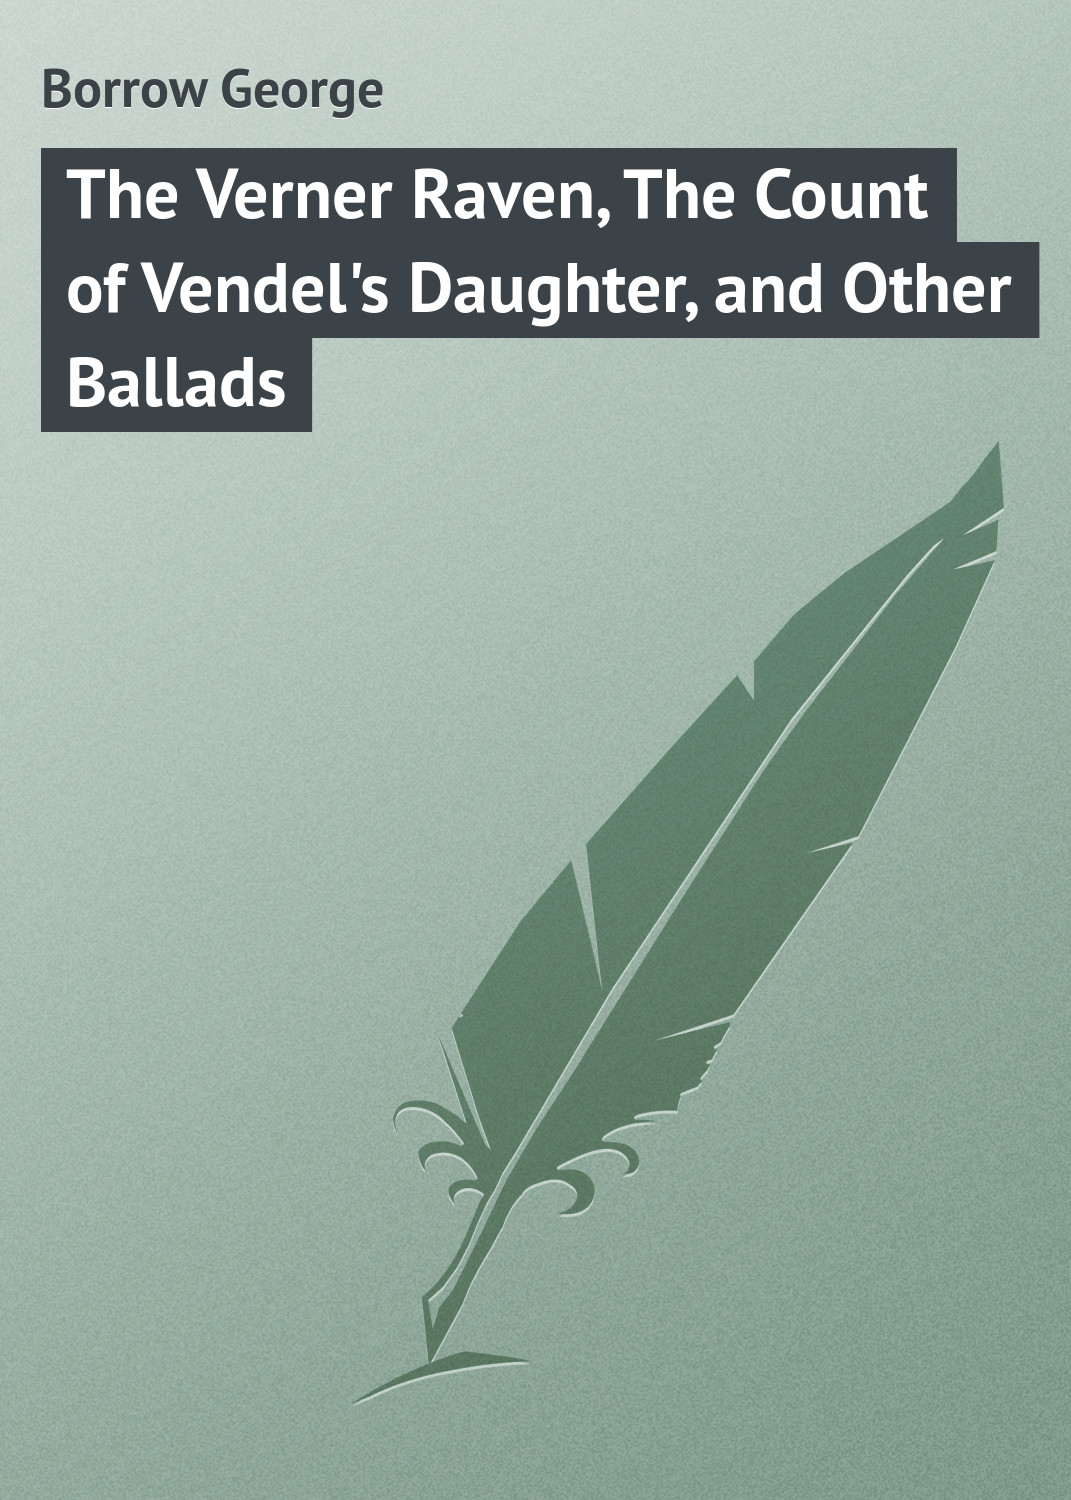 Книга The Verner Raven, The Count of Vendel's Daughter, and Other Ballads из серии , созданная George Borrow, может относится к жанру Поэзия, Зарубежная классика, Зарубежные стихи, Иностранные языки. Стоимость электронной книги The Verner Raven, The Count of Vendel's Daughter, and Other Ballads с идентификатором 23153171 составляет 5.99 руб.